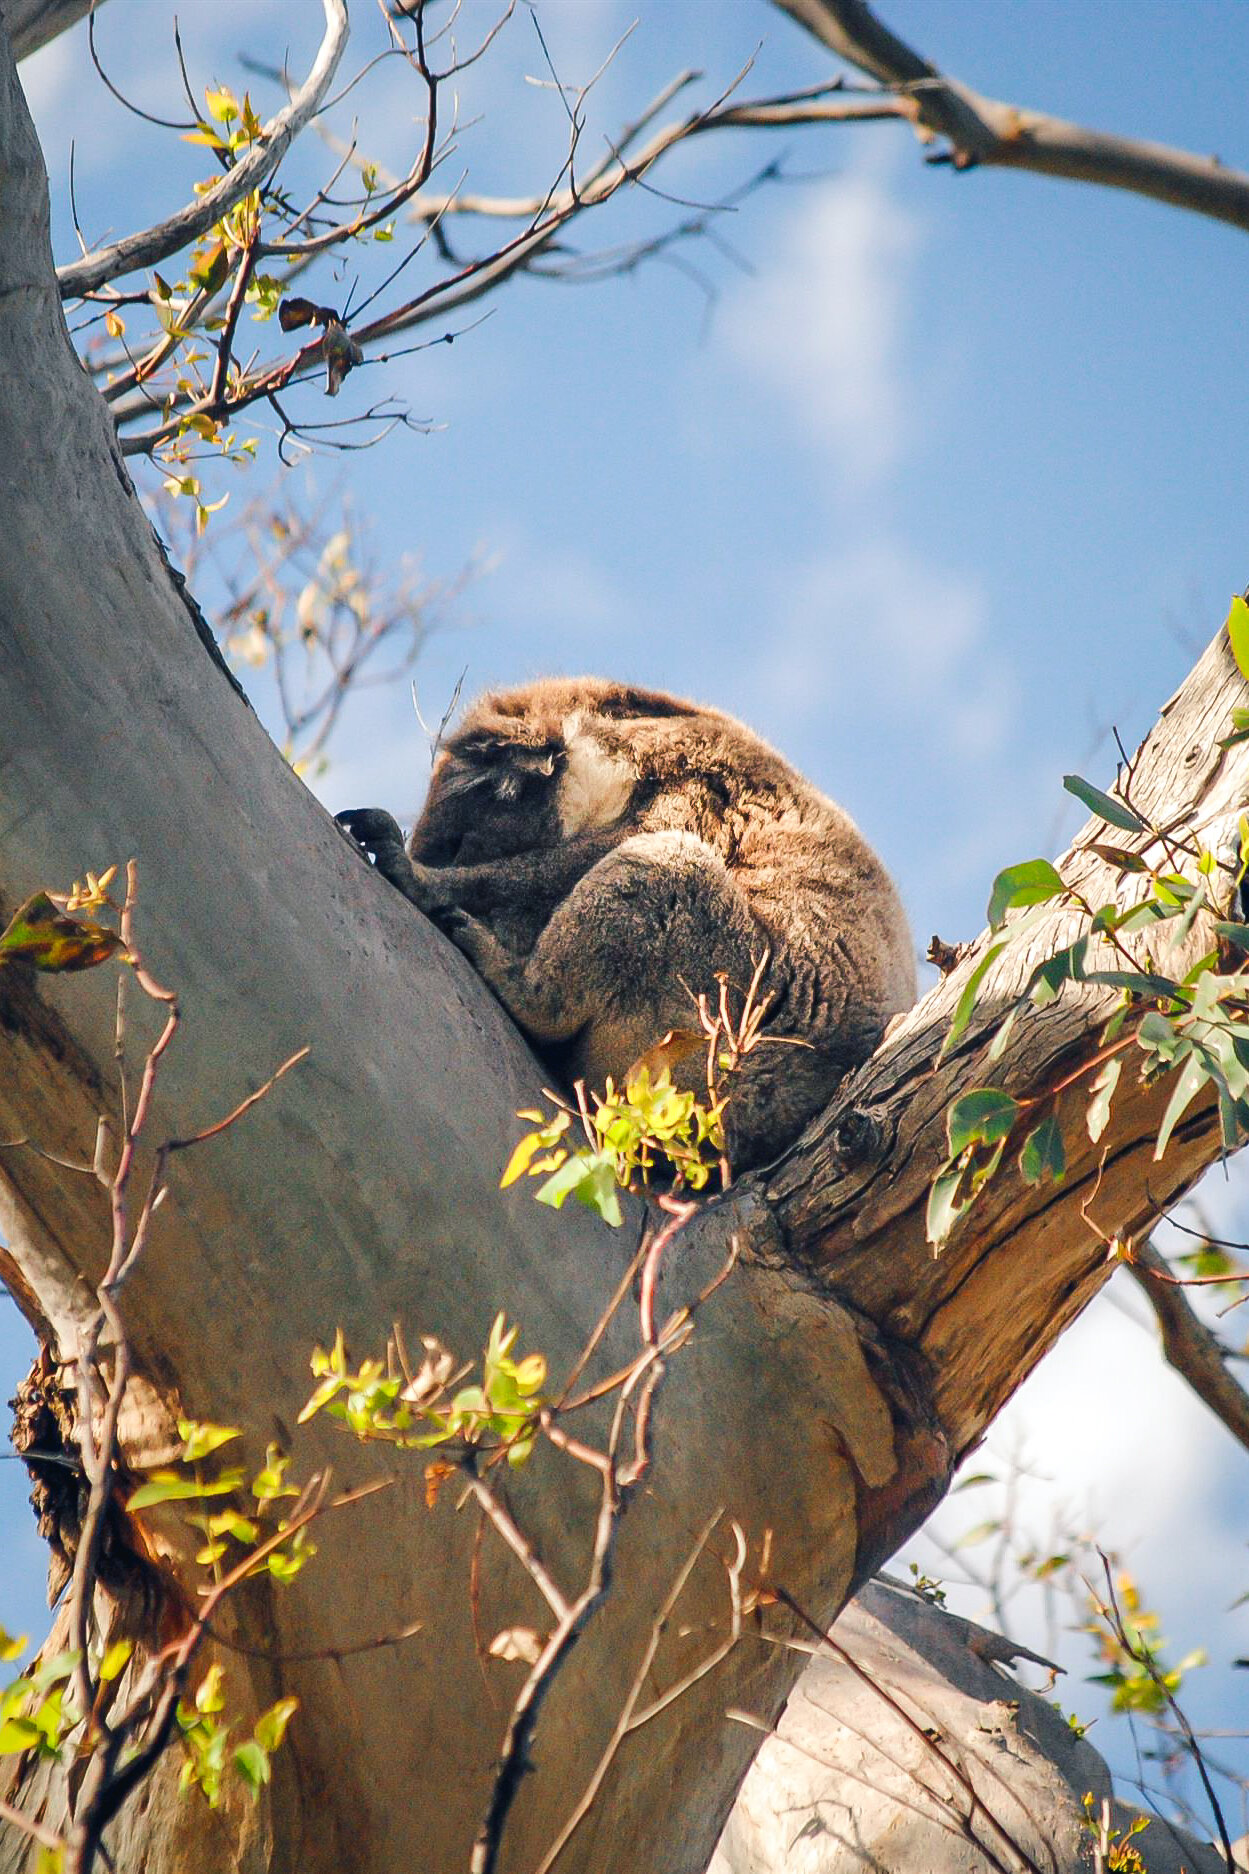 Koala, Victoria, Australia